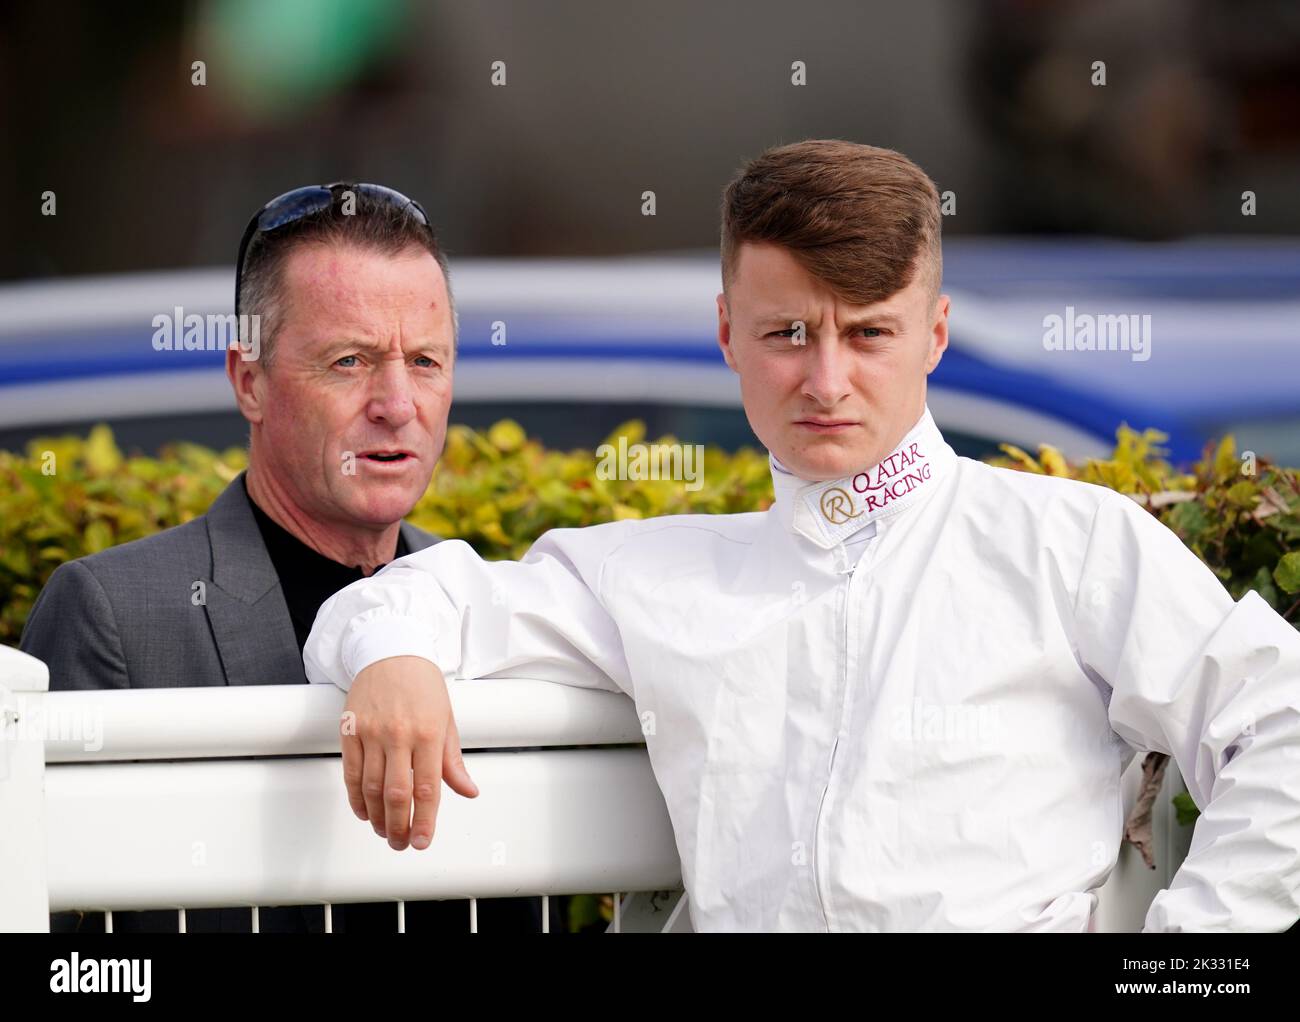 L'ex Jockey Kieren Fallon (a sinistra) con suo figlio e il Jockey Cieren Fallon jr durante il giorno di Juddmonte del Cambridgeshire Meeting all'ippodromo di Newmarket. Data immagine: Sabato 24 settembre 2022. Foto Stock